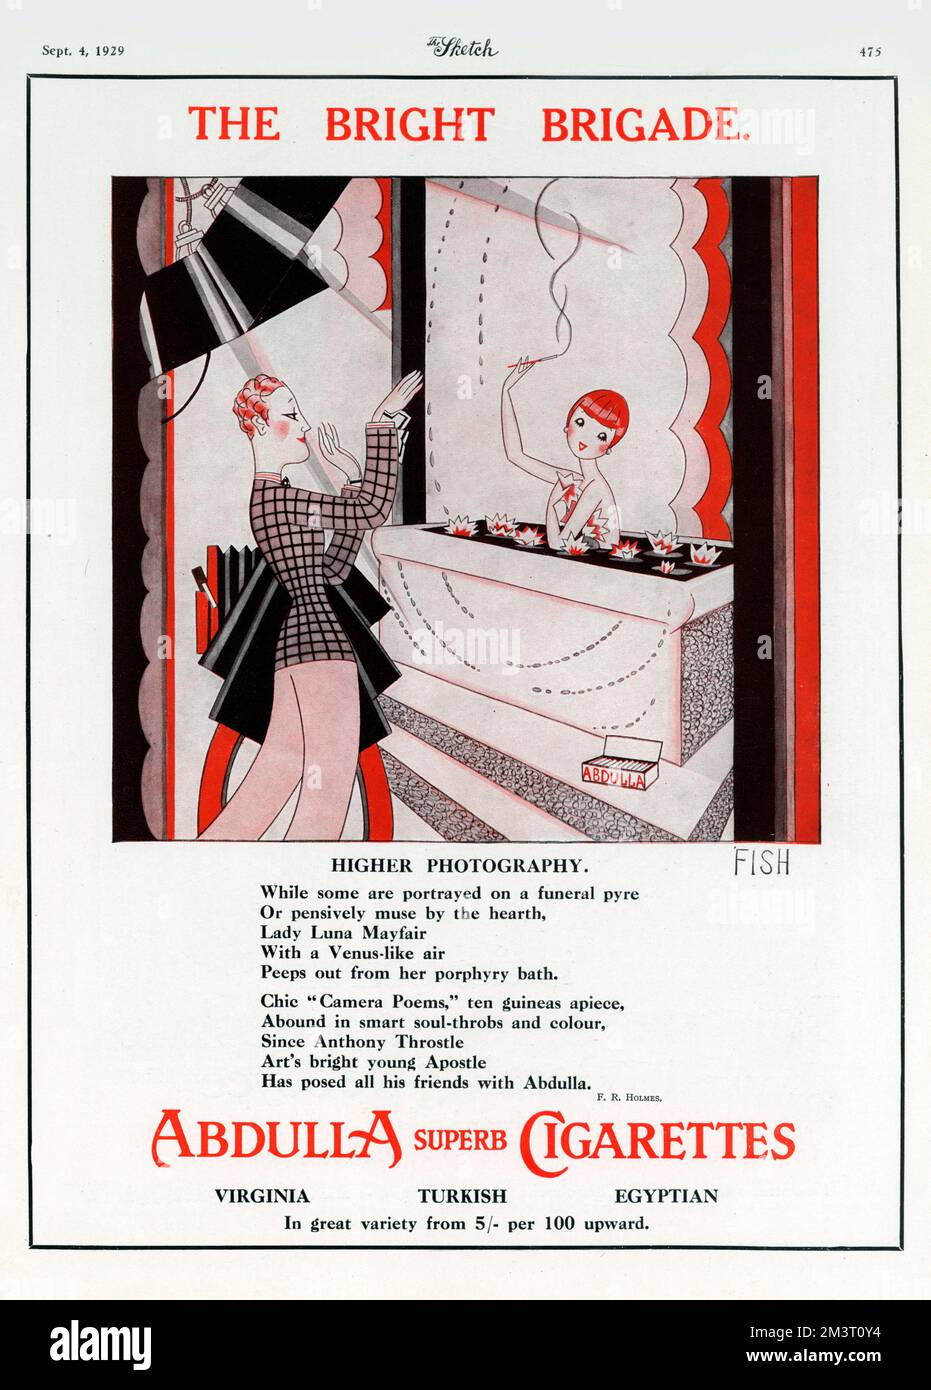 Ilustración de Anne Harriet ('Annie') Fish (1890-1964) para un anuncio de cigarrillos de Abdulla - 'La Brigada Brillante' - Fotografía superior. Foto de stock